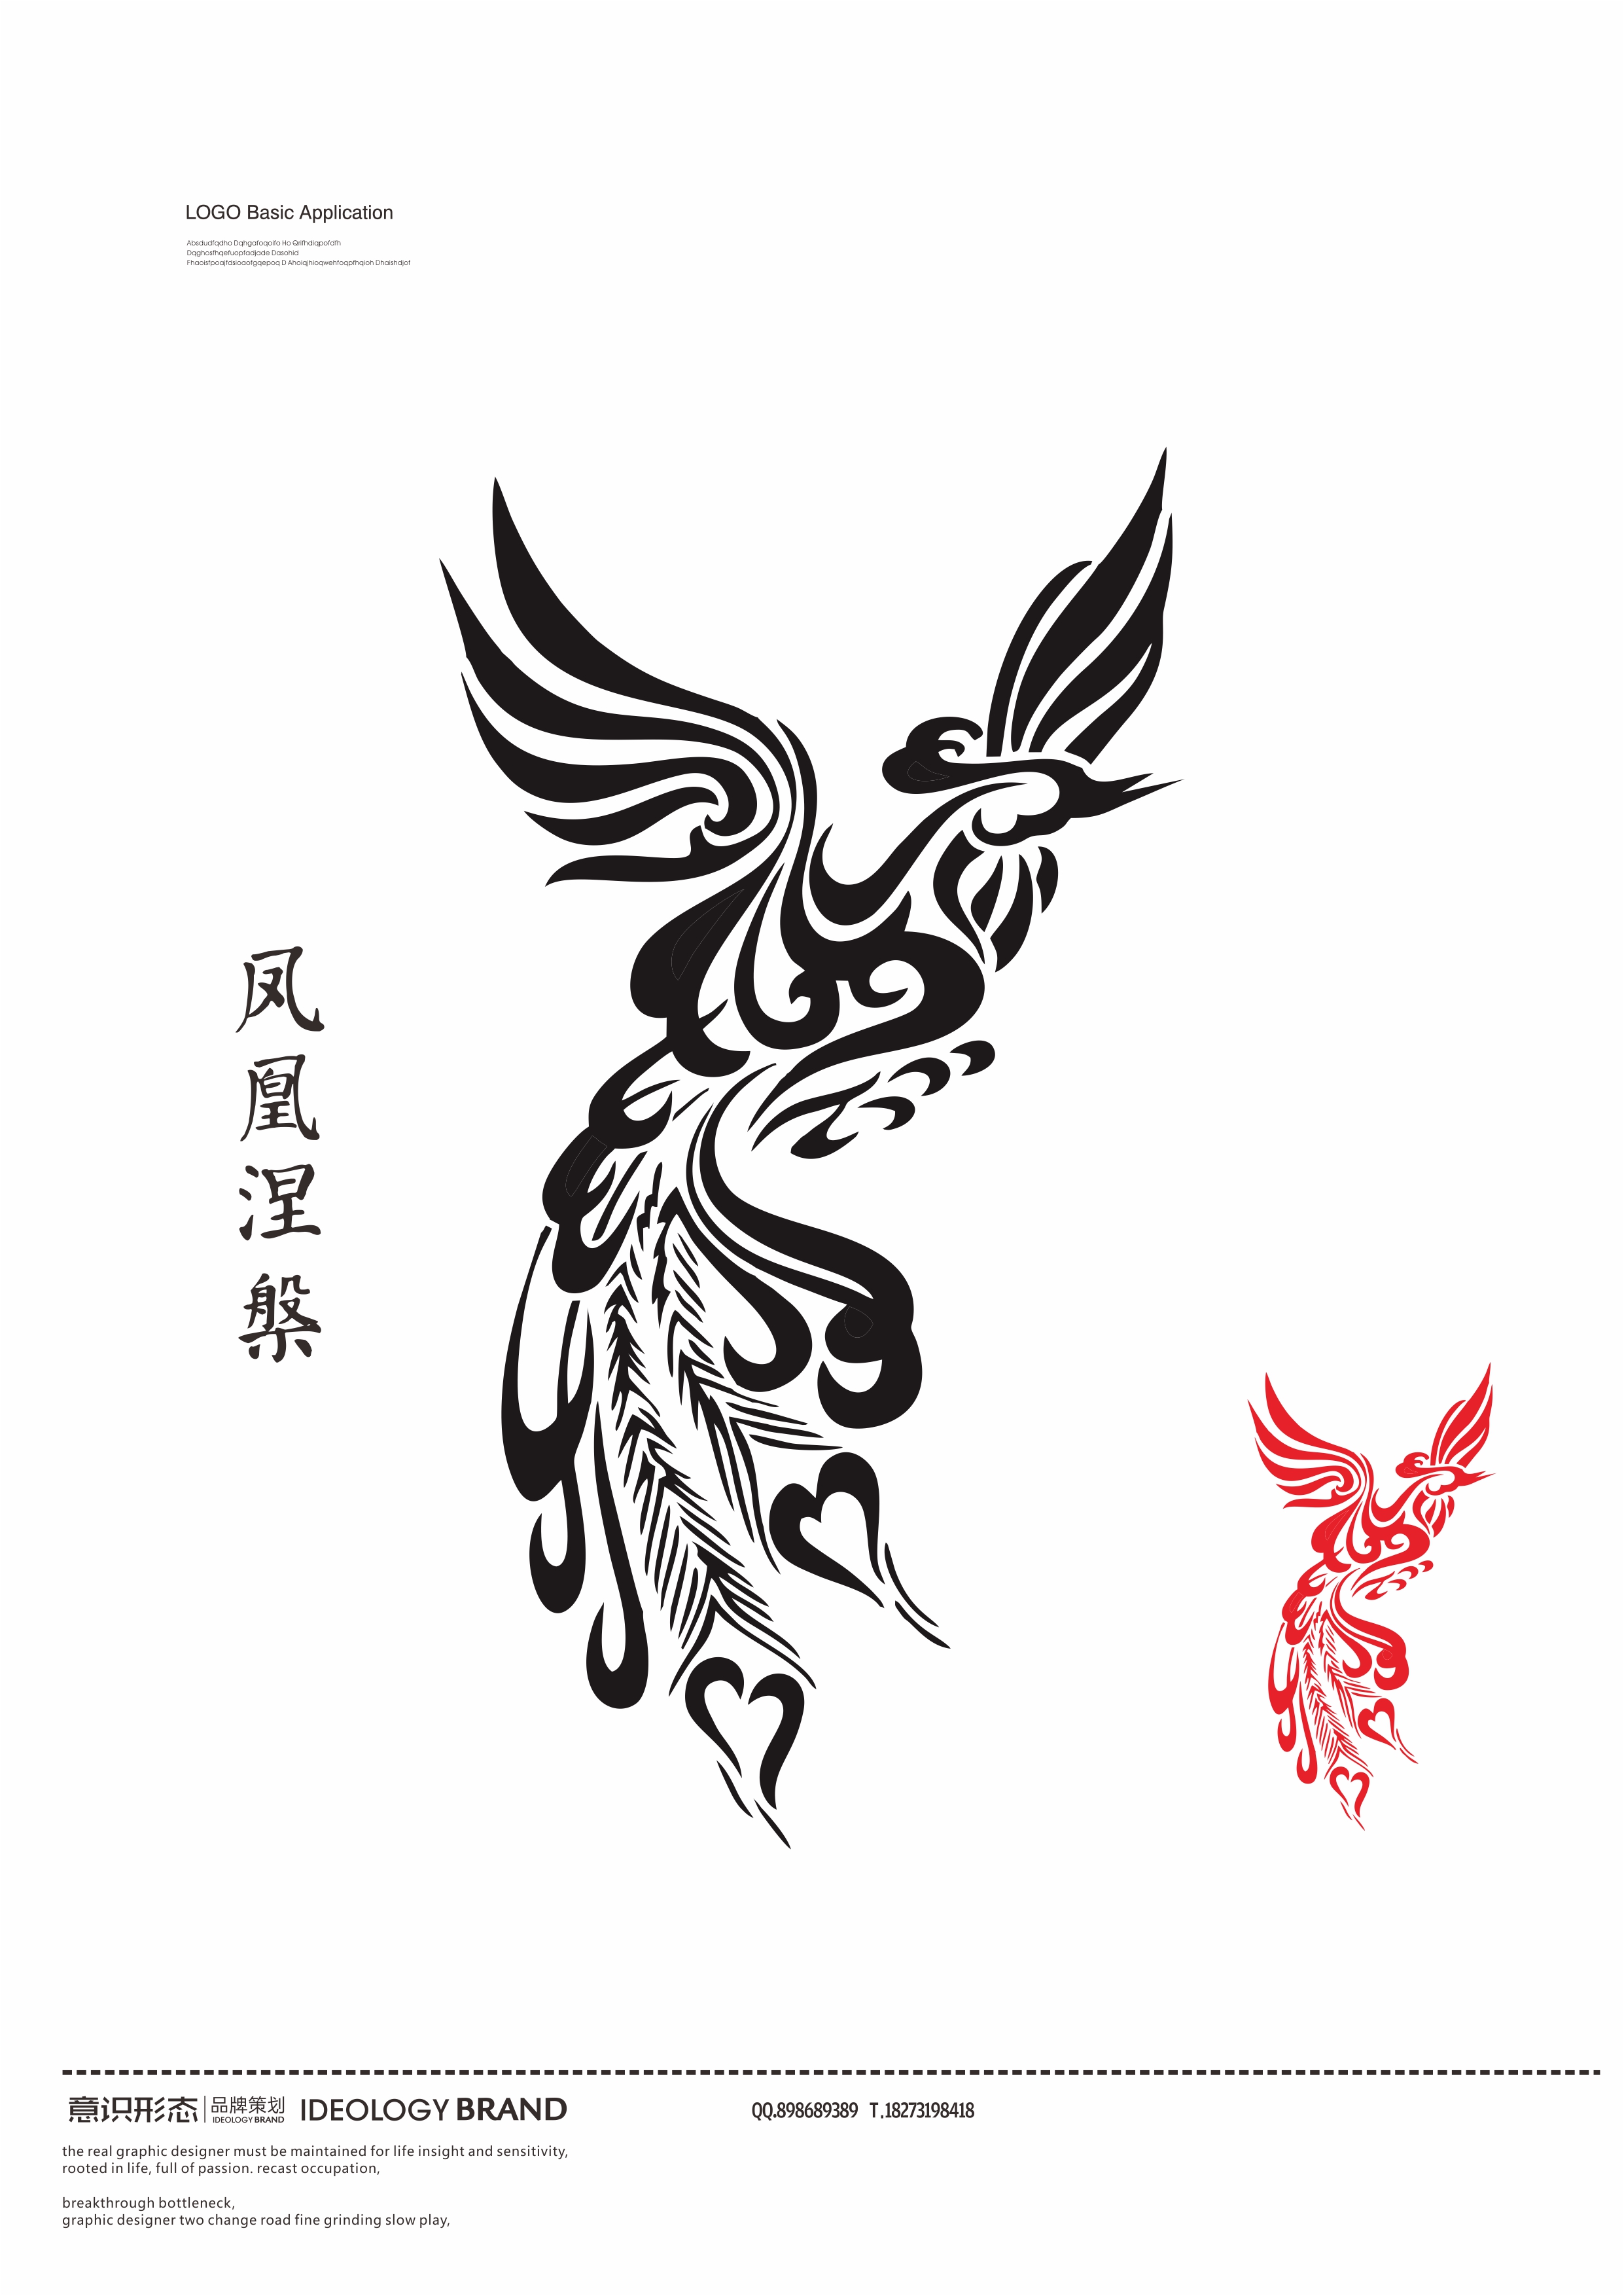 最新最全的凤凰满背纹身手稿图片大全集(多图) - 纹身手稿大全 武汉老兵纹身